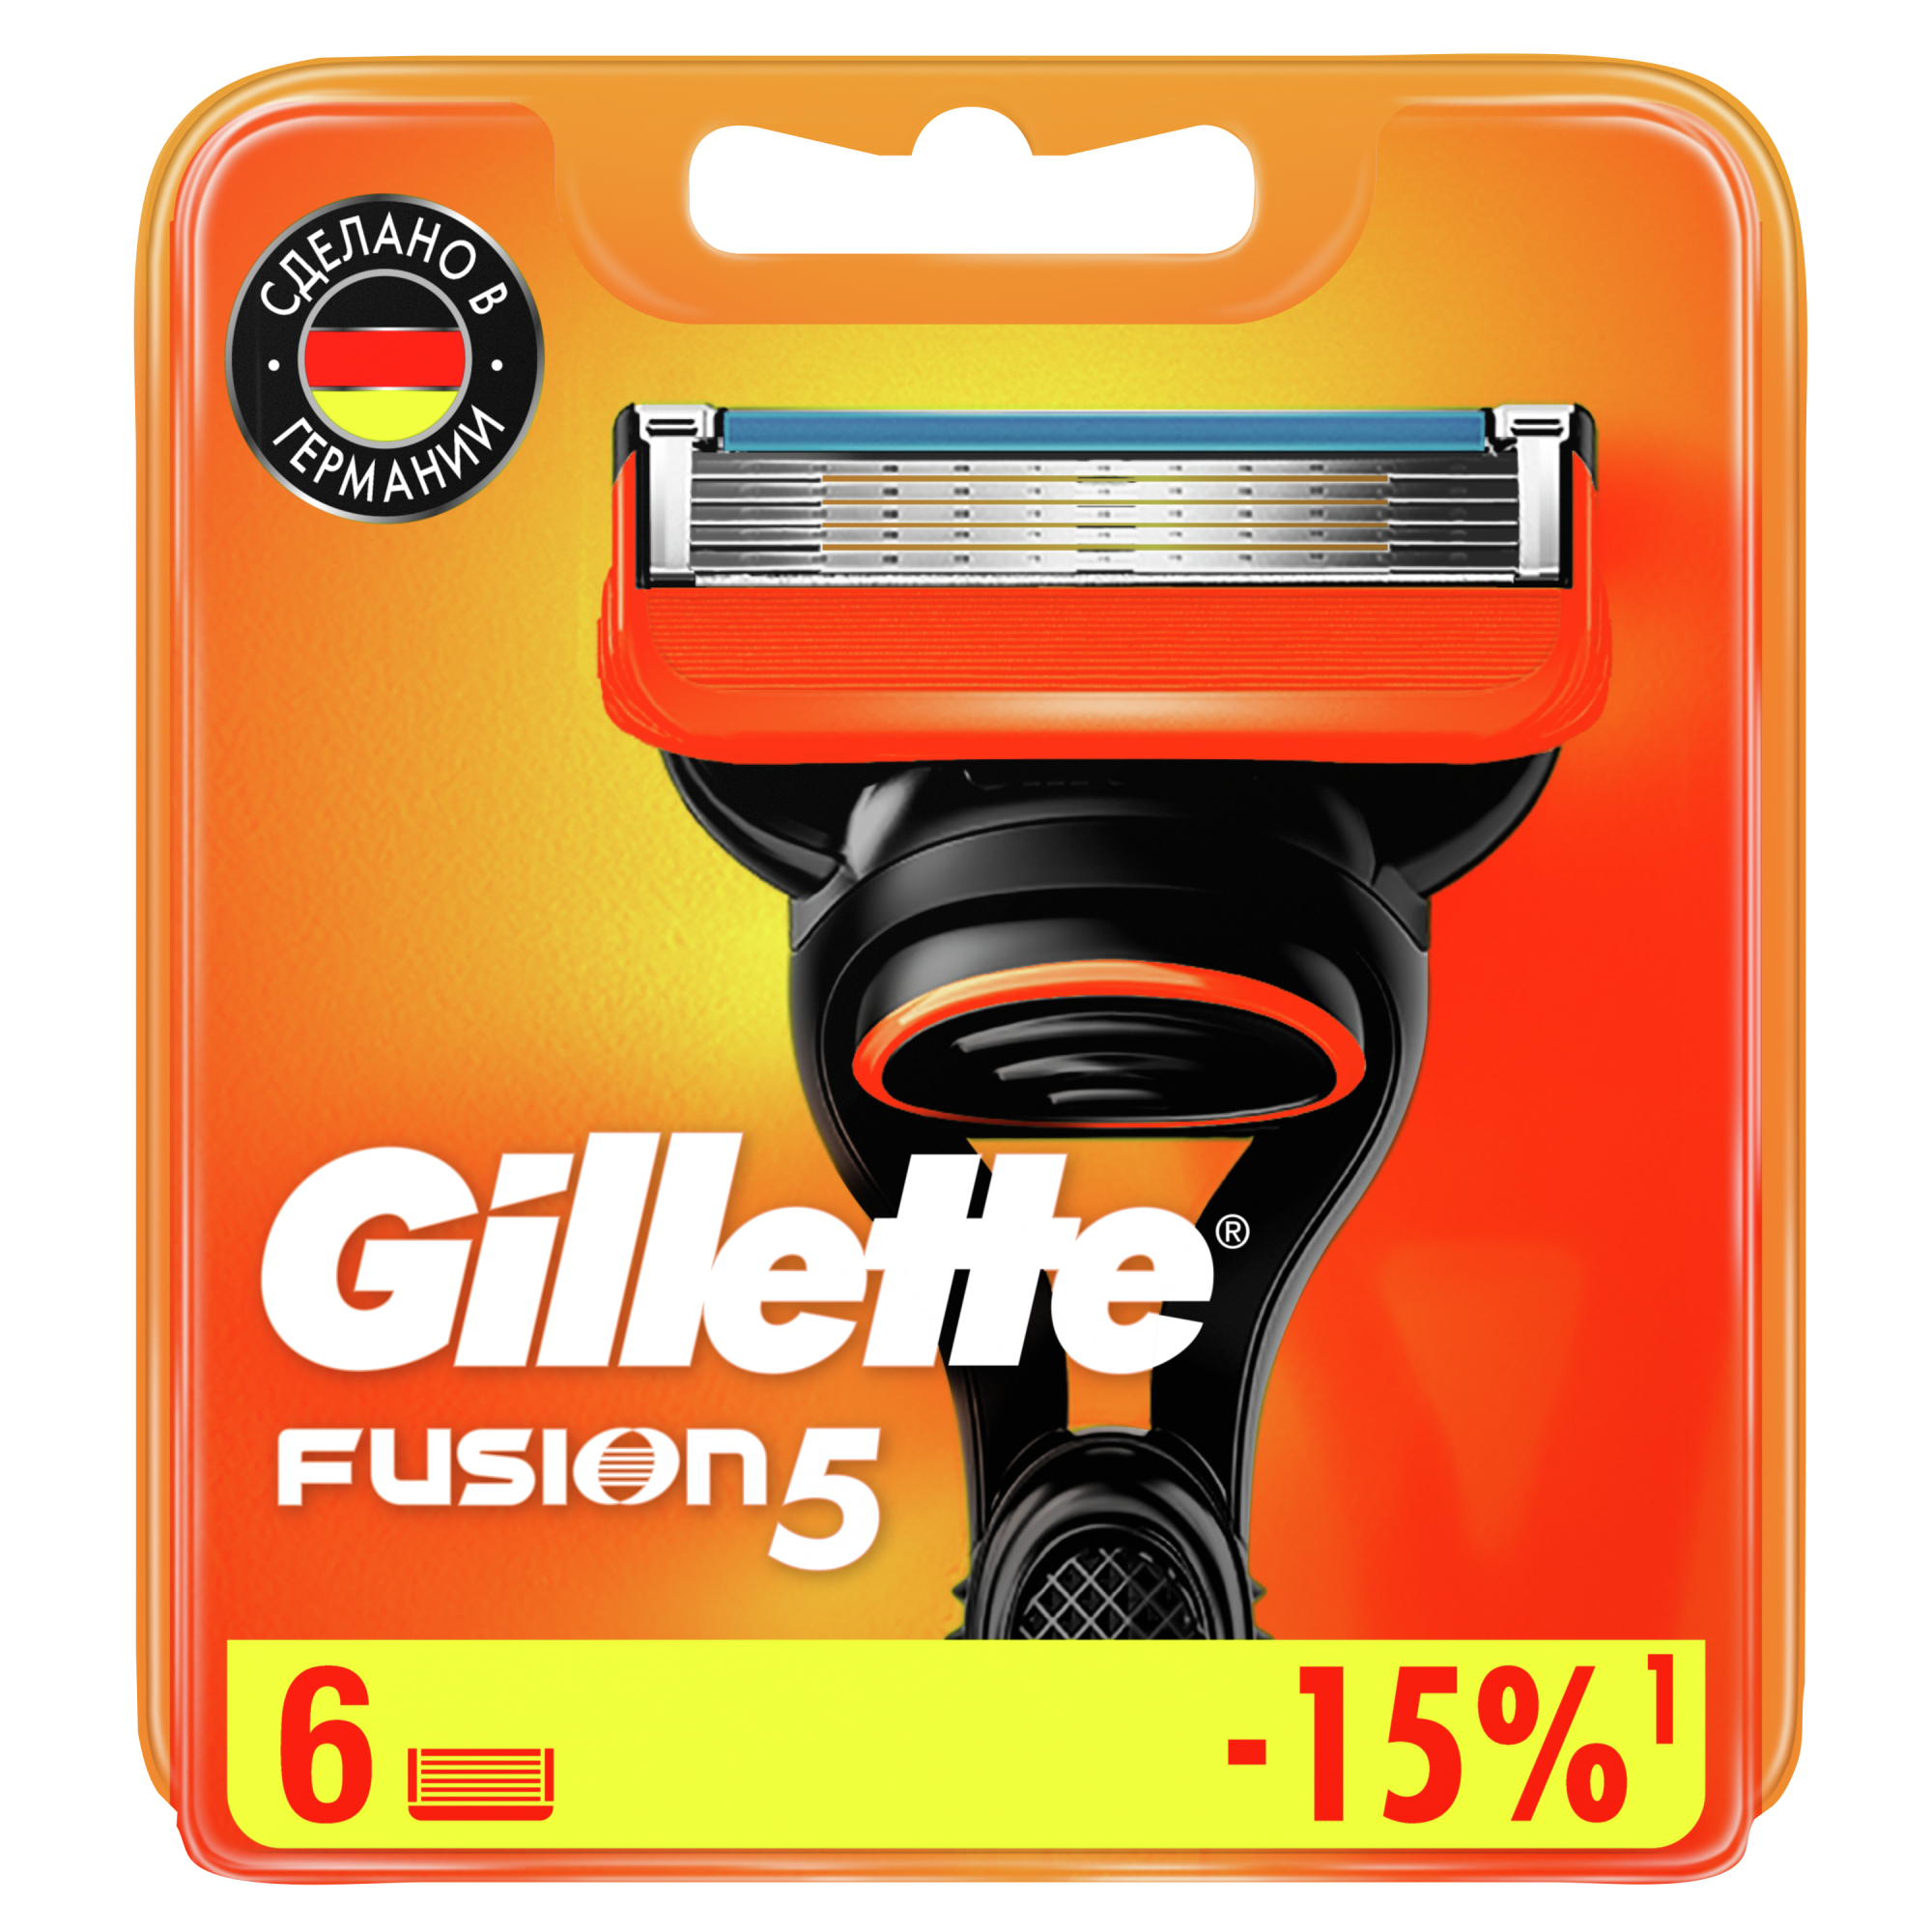 Сменные кассеты для мужской бритвы Gillette Fusion5 Power, с 5 лезвиями, c точным триммером для труднодоступных мест, для гладкого бритья надолго, 6 шт сменные кассеты для бритья 16 шт